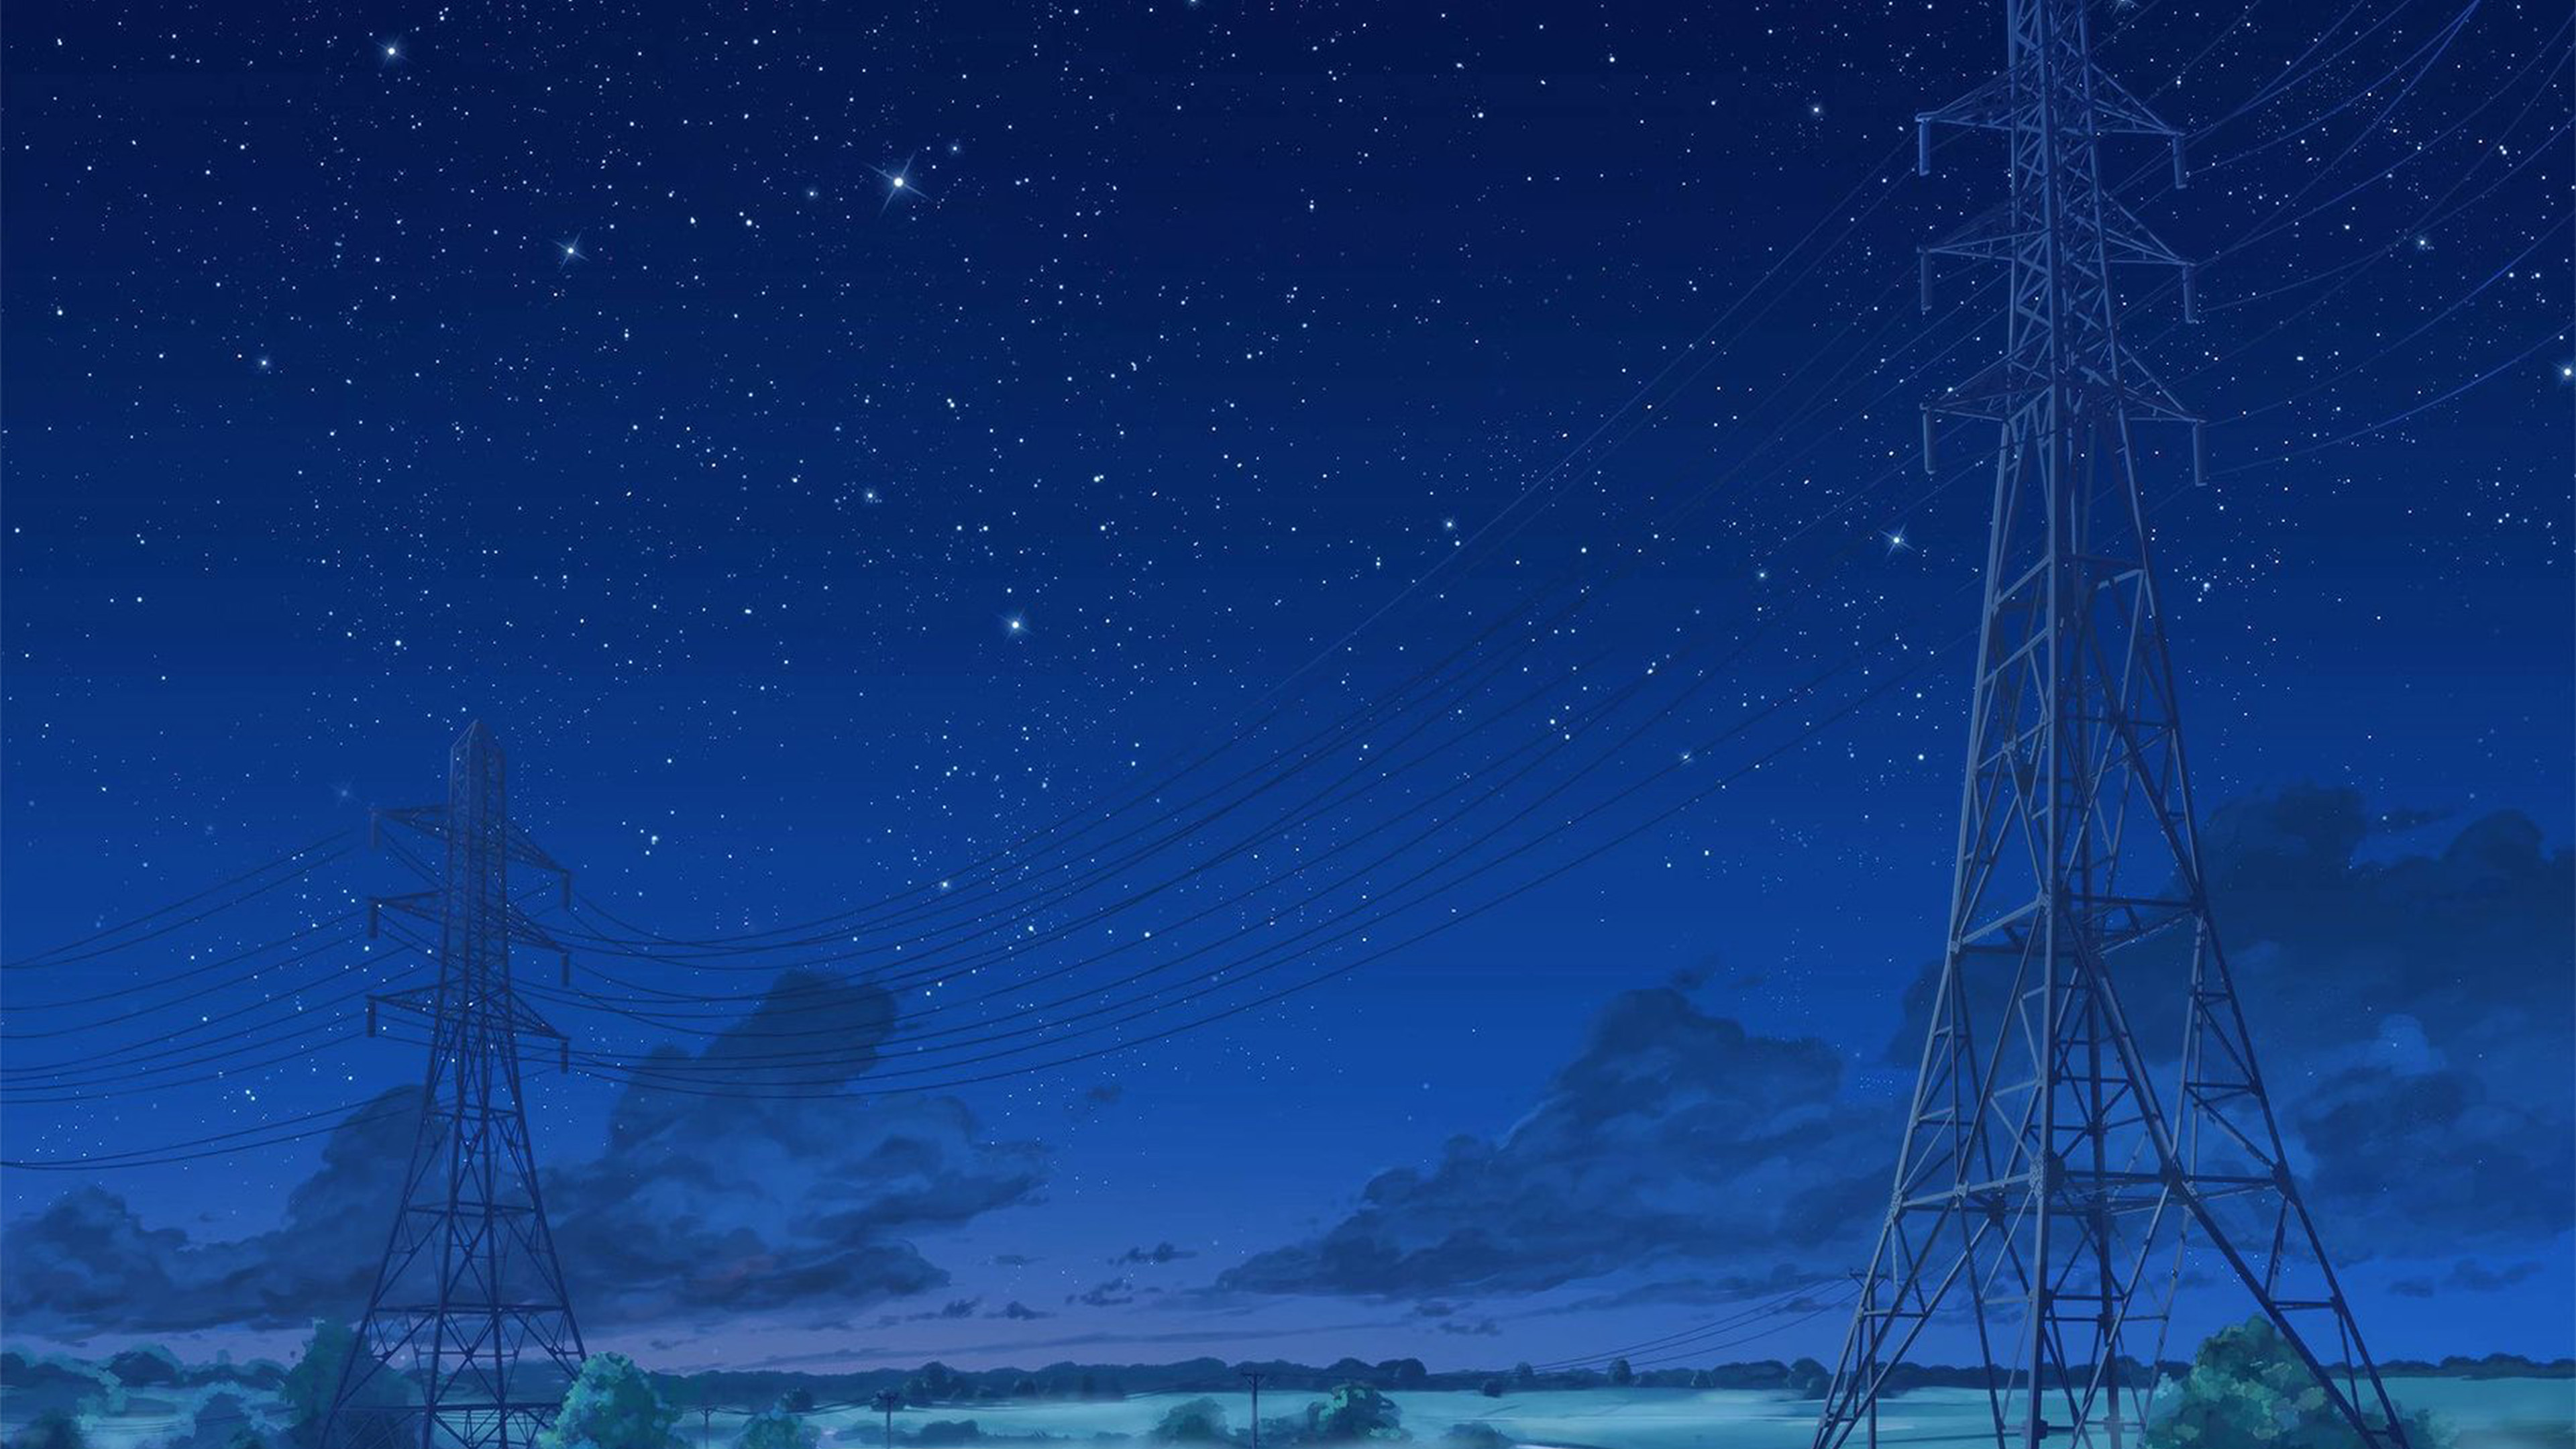 wallpaper for desktop, laptop. arseniy chebynkin night sky star blue illustration art anime